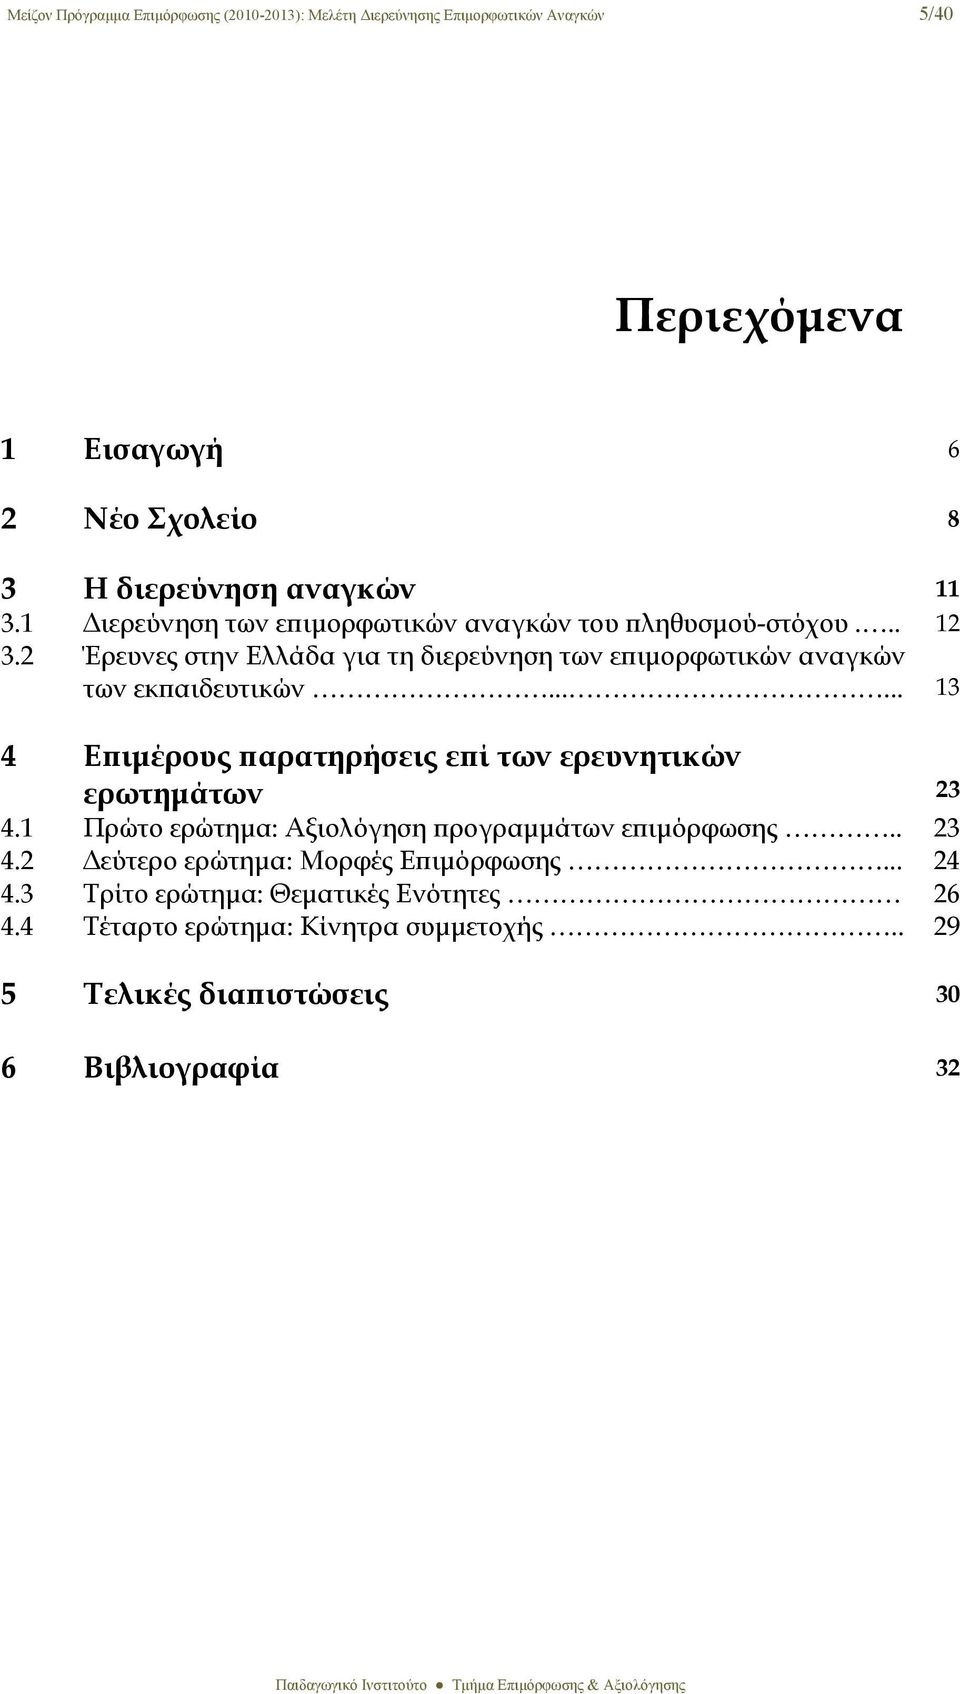 2 Έρευνες στην Ελλάδα για τη διερεύνηση των επιμορφωτικών αναγκών των εκπαιδευτικών...... 13 4 Επιμέρους παρατηρήσεις επί των ερευνητικών ερωτημάτων 23 4.